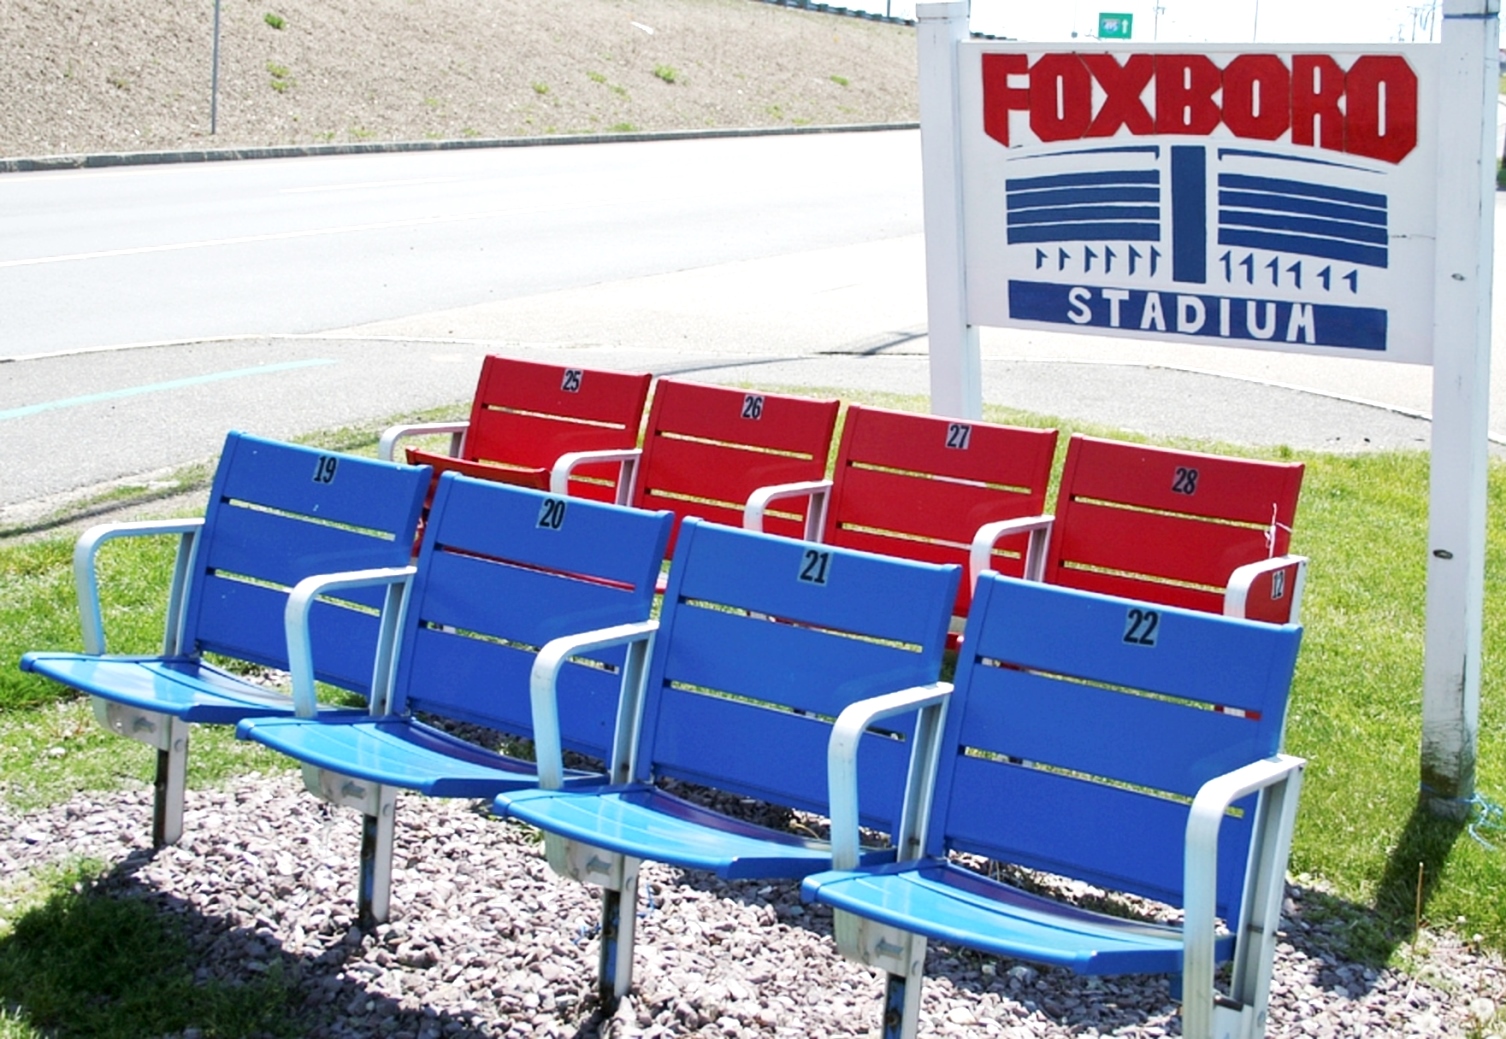 22-greetingsfoxboro-seats-from-original-foxboro-stadium.v1.jpg